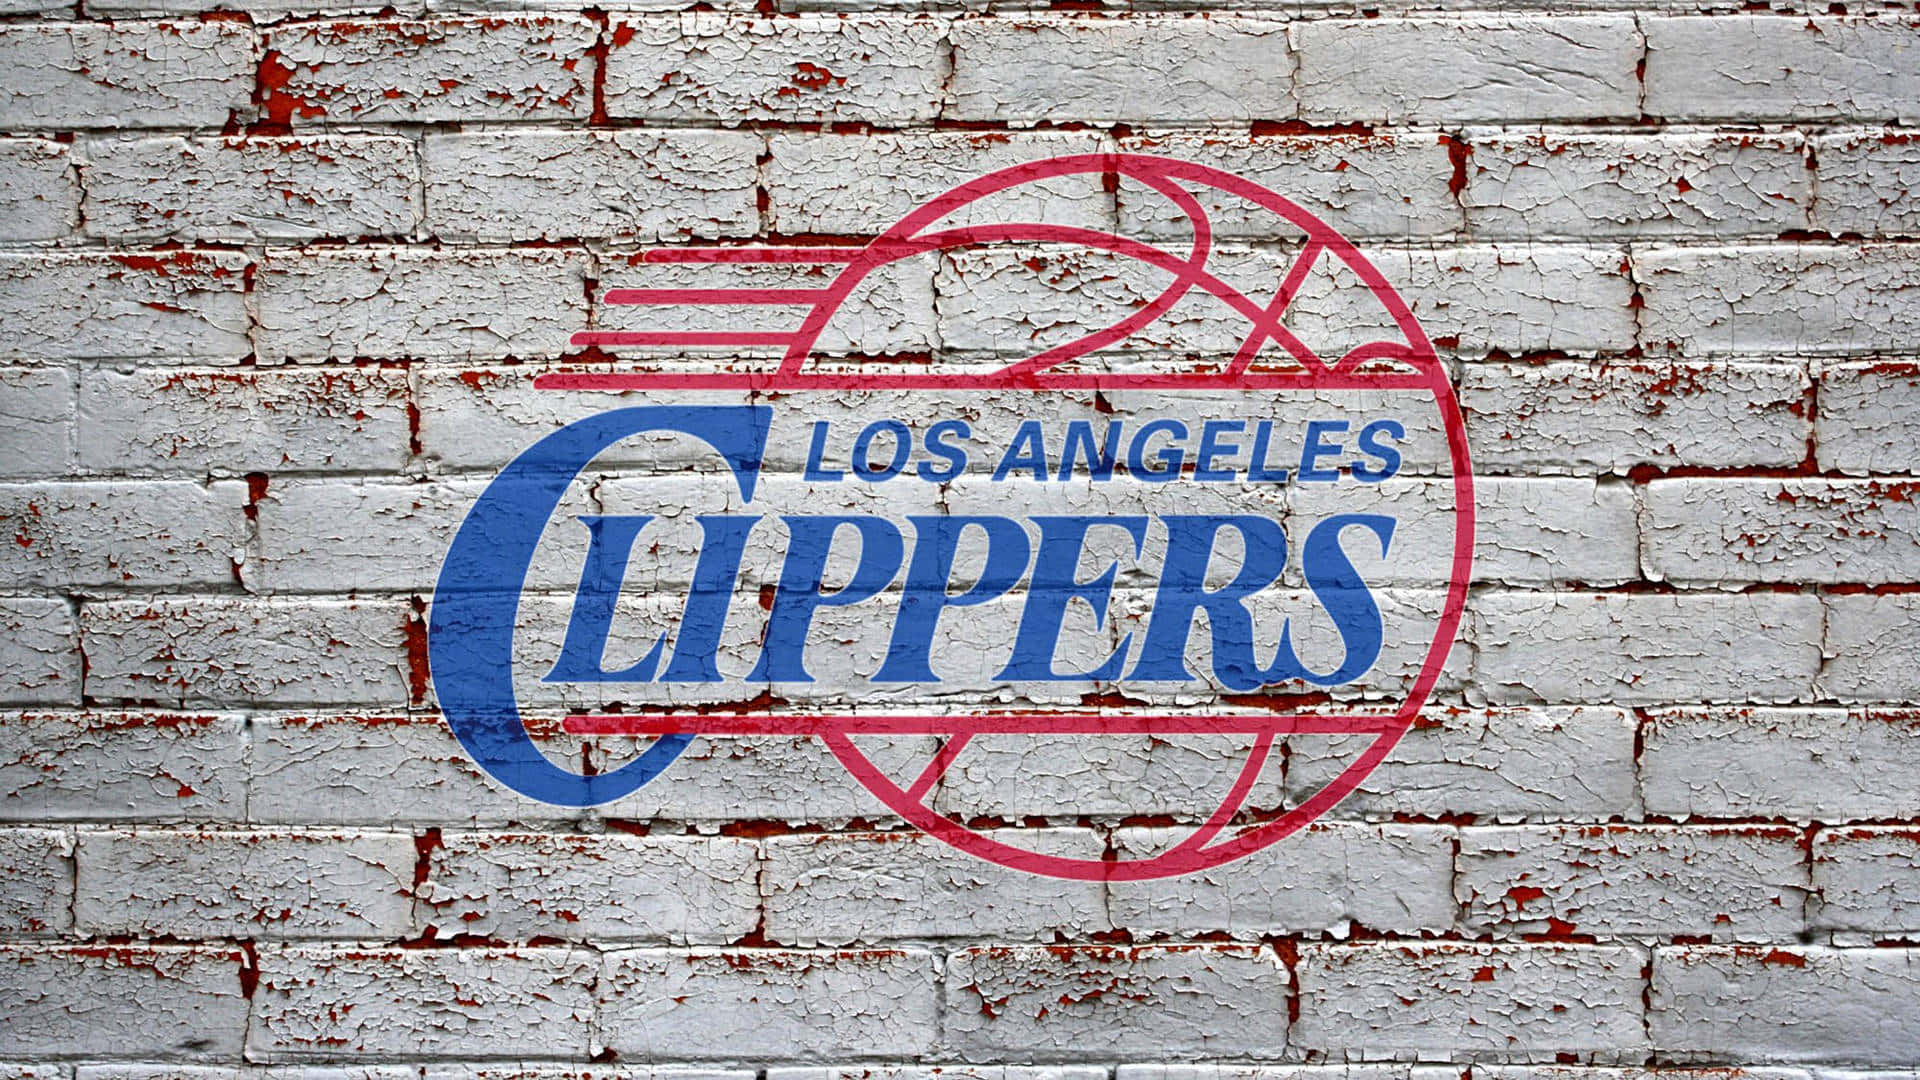 Ilustracióndel Logotipo De Los Angeles Clippers En Una Pared De Ladrillo. Fondo de pantalla